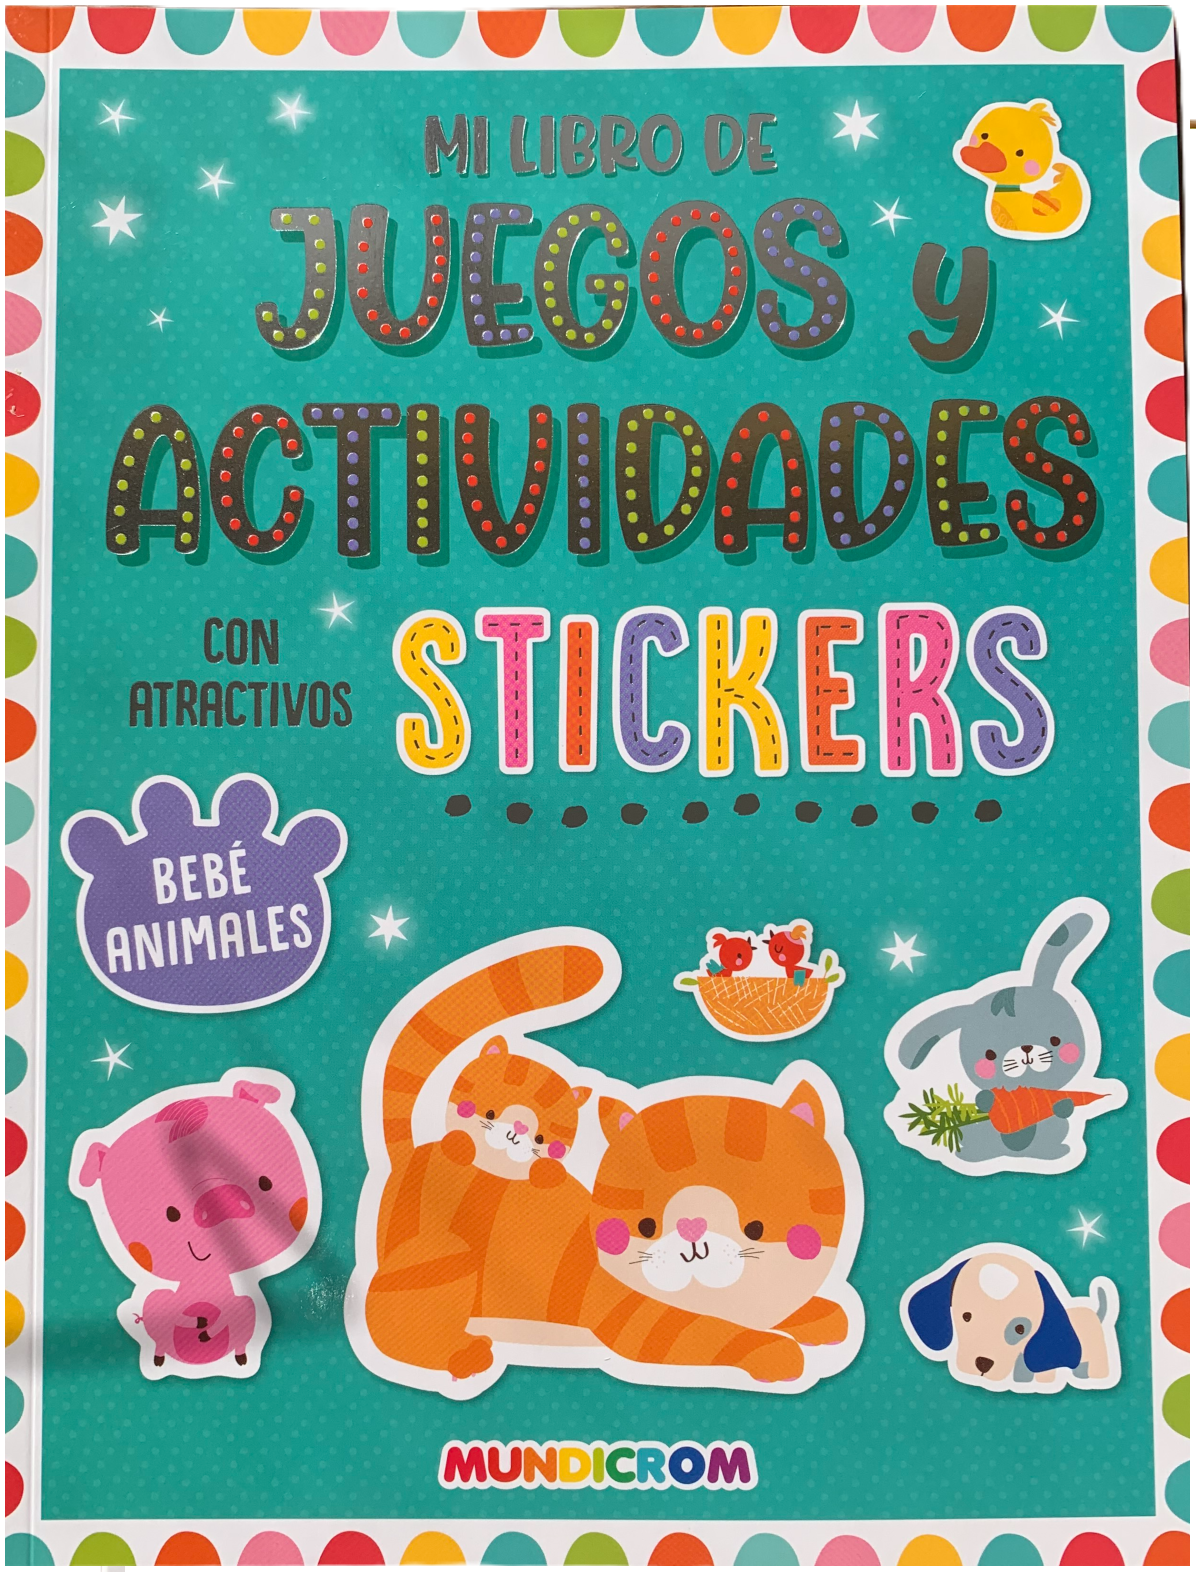 Coleccion de 3 Libros de Juegos y Actividades con stickers para niñas - Mundicrom